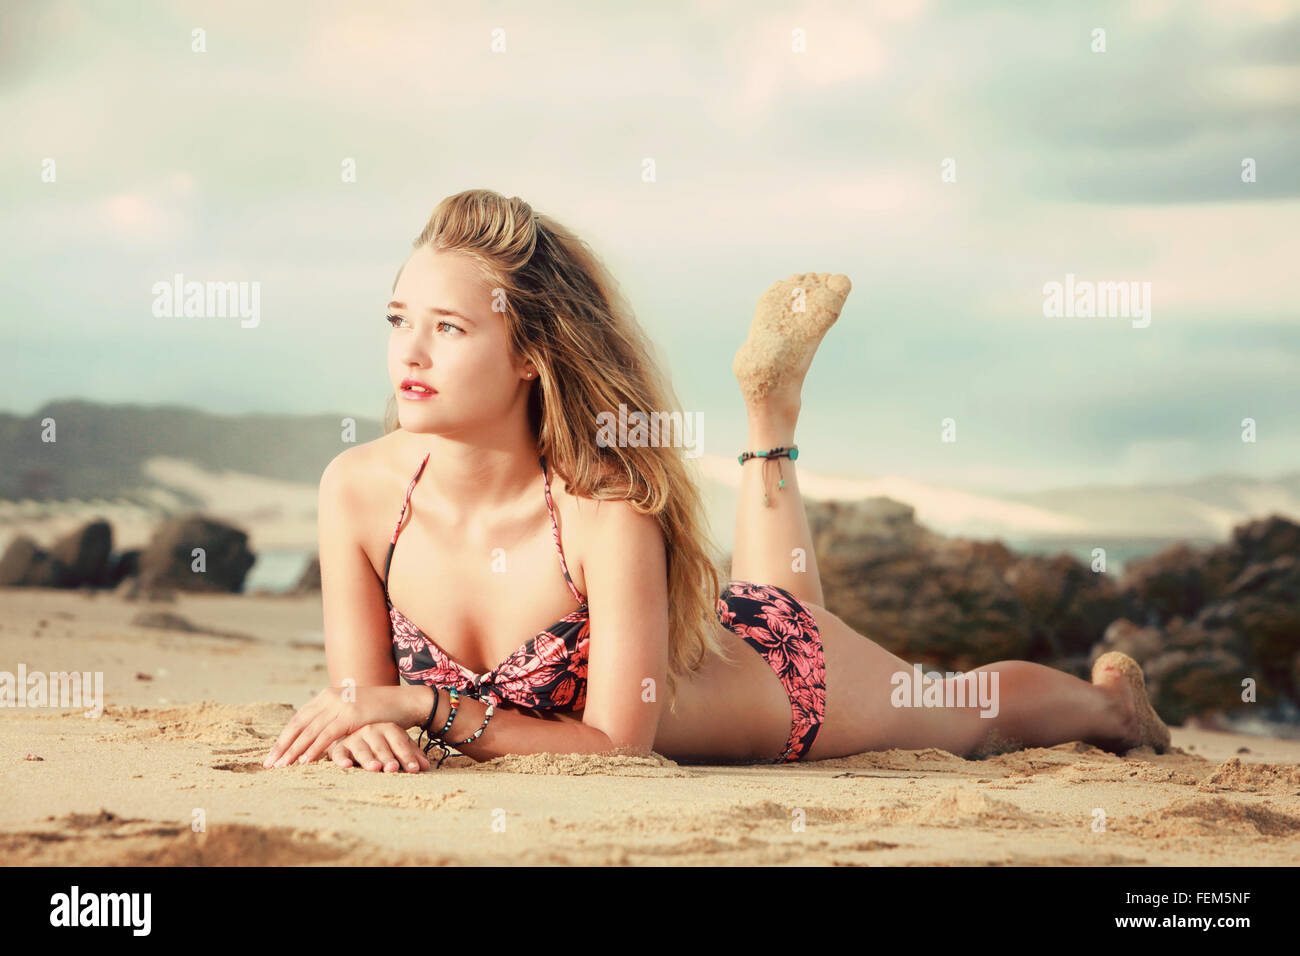 Eine schöne Blondine liegt auf dem Bauch auf einem Felsen am Strand in Afrika. Sie hat einen Bikini und weißen Shorts am Strand Stockfoto